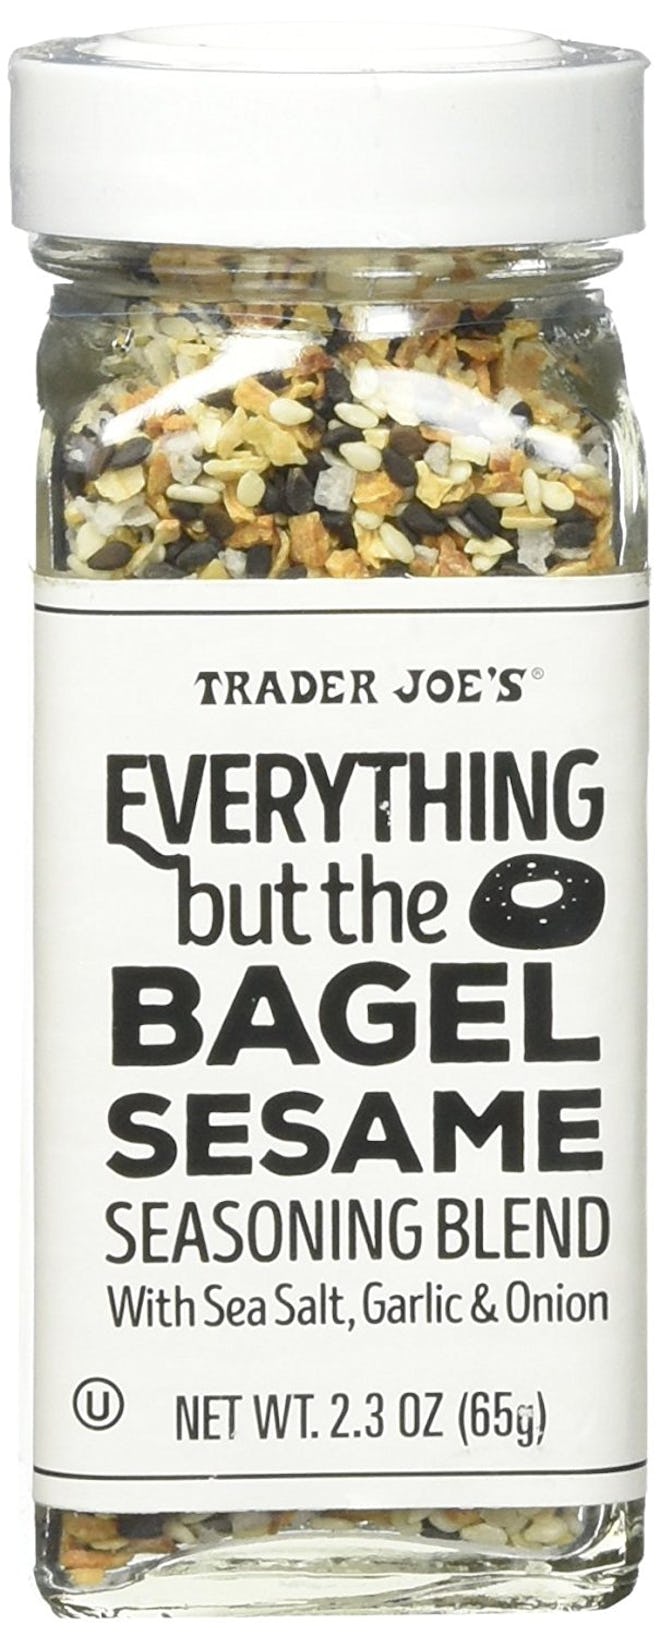 Trader Joe's Everything But Bagel Sesame Seasoning